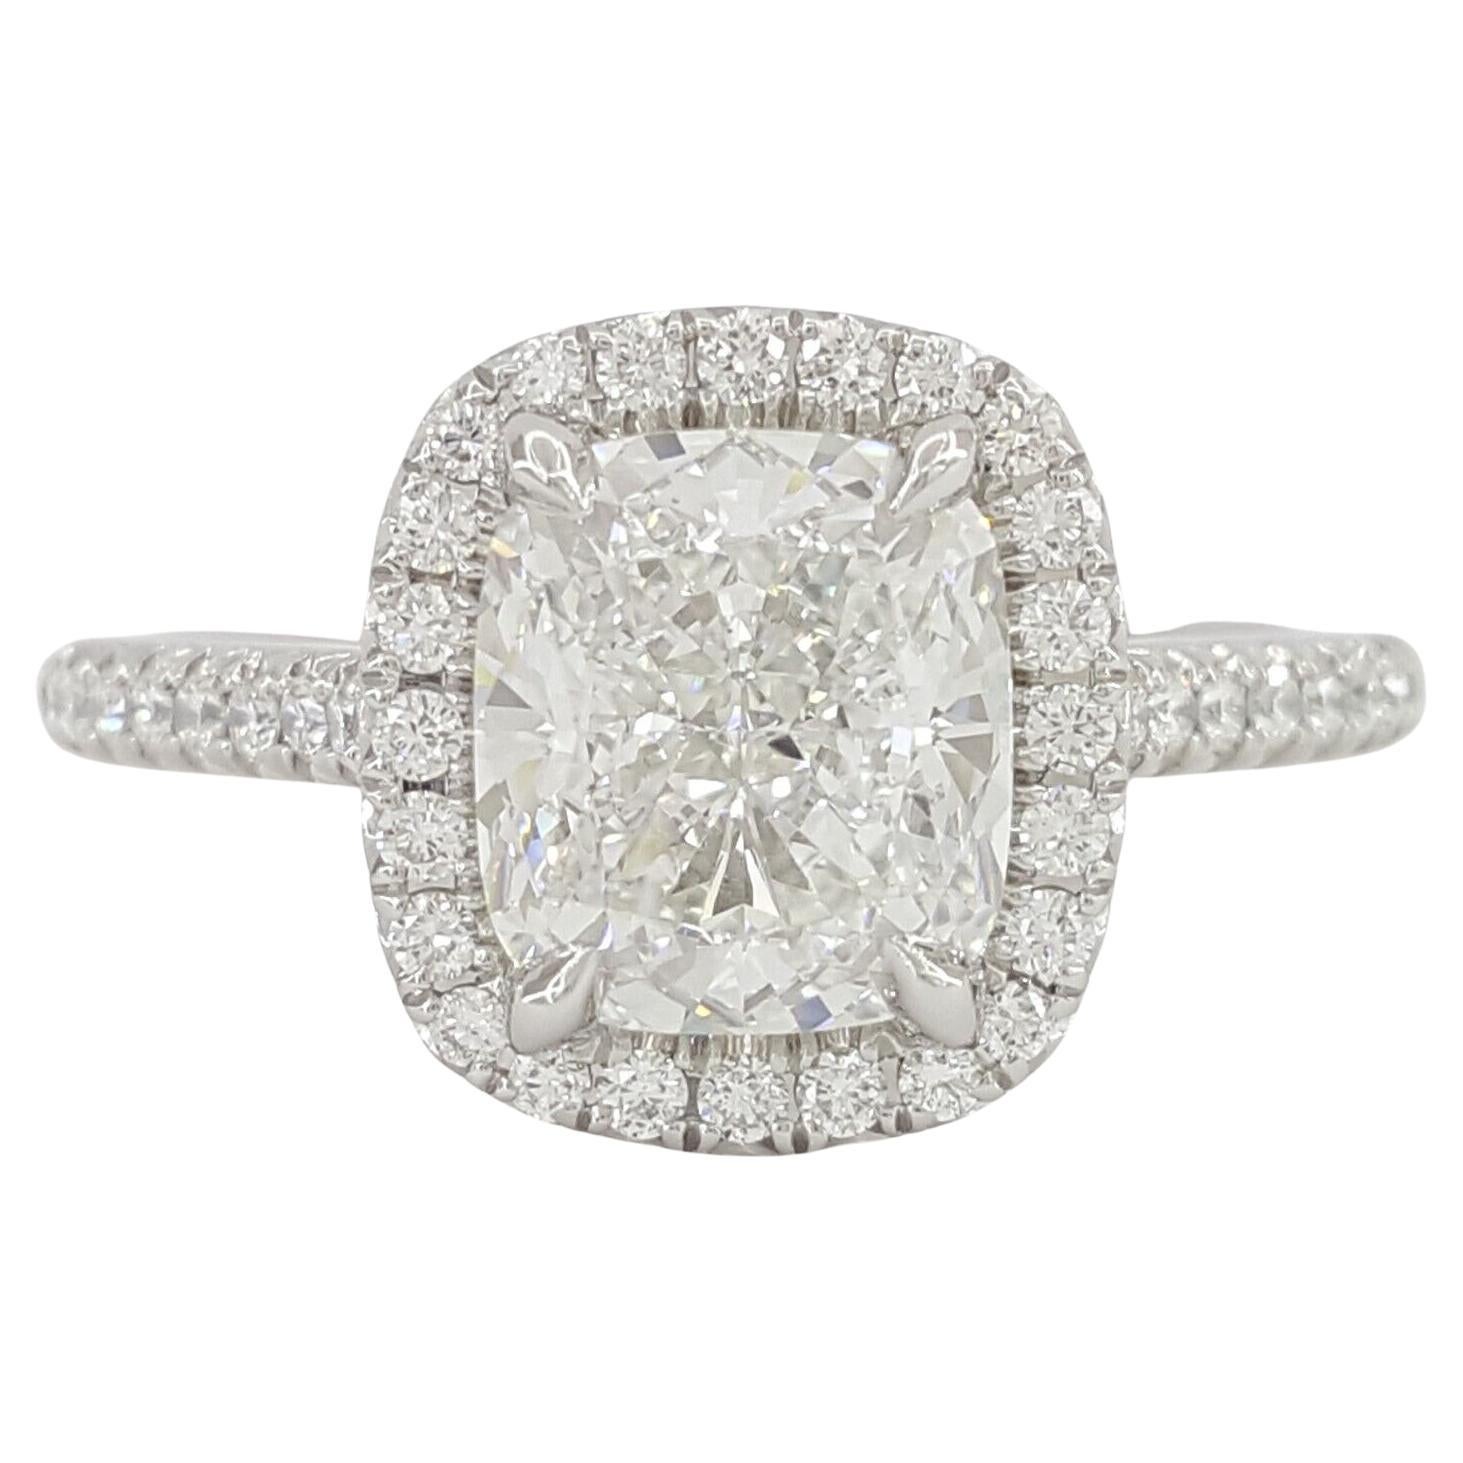 GIA Certified 2.53 Carat Diamond Platinum Engagement Ring